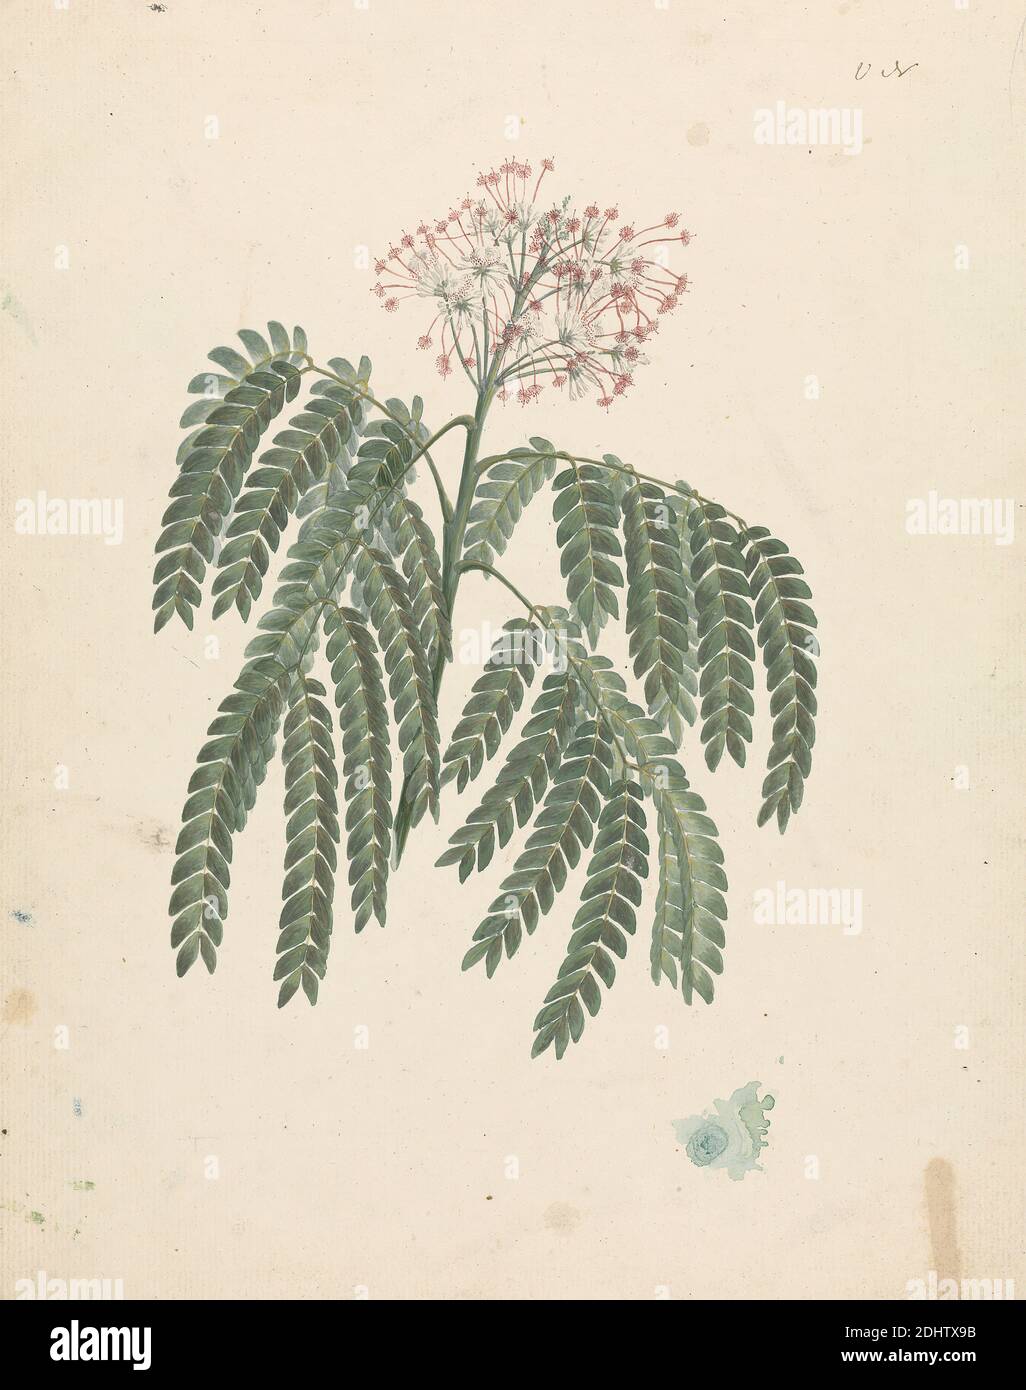 Albizia gummifera (J.F. Gmel.) C.A. Sm (Gummy Albizia Tree): Fertige Zeichnung des Blütenkopfes, mit Details von Blütenstand, Blümchen und Blatt, Luigi Balugani, 1737–1770, italienisch, vormals James Bruce, 1730–1794, britisch, ca. 1768, Aquarell, Gouache und Graphit auf Medium, leicht strukturiert, cremefarbenes Papier, Blatt: 12 3/8 × 9 3/4 Zoll (31.4 × 24.8 cm), botanischer Gegenstand Stockfoto